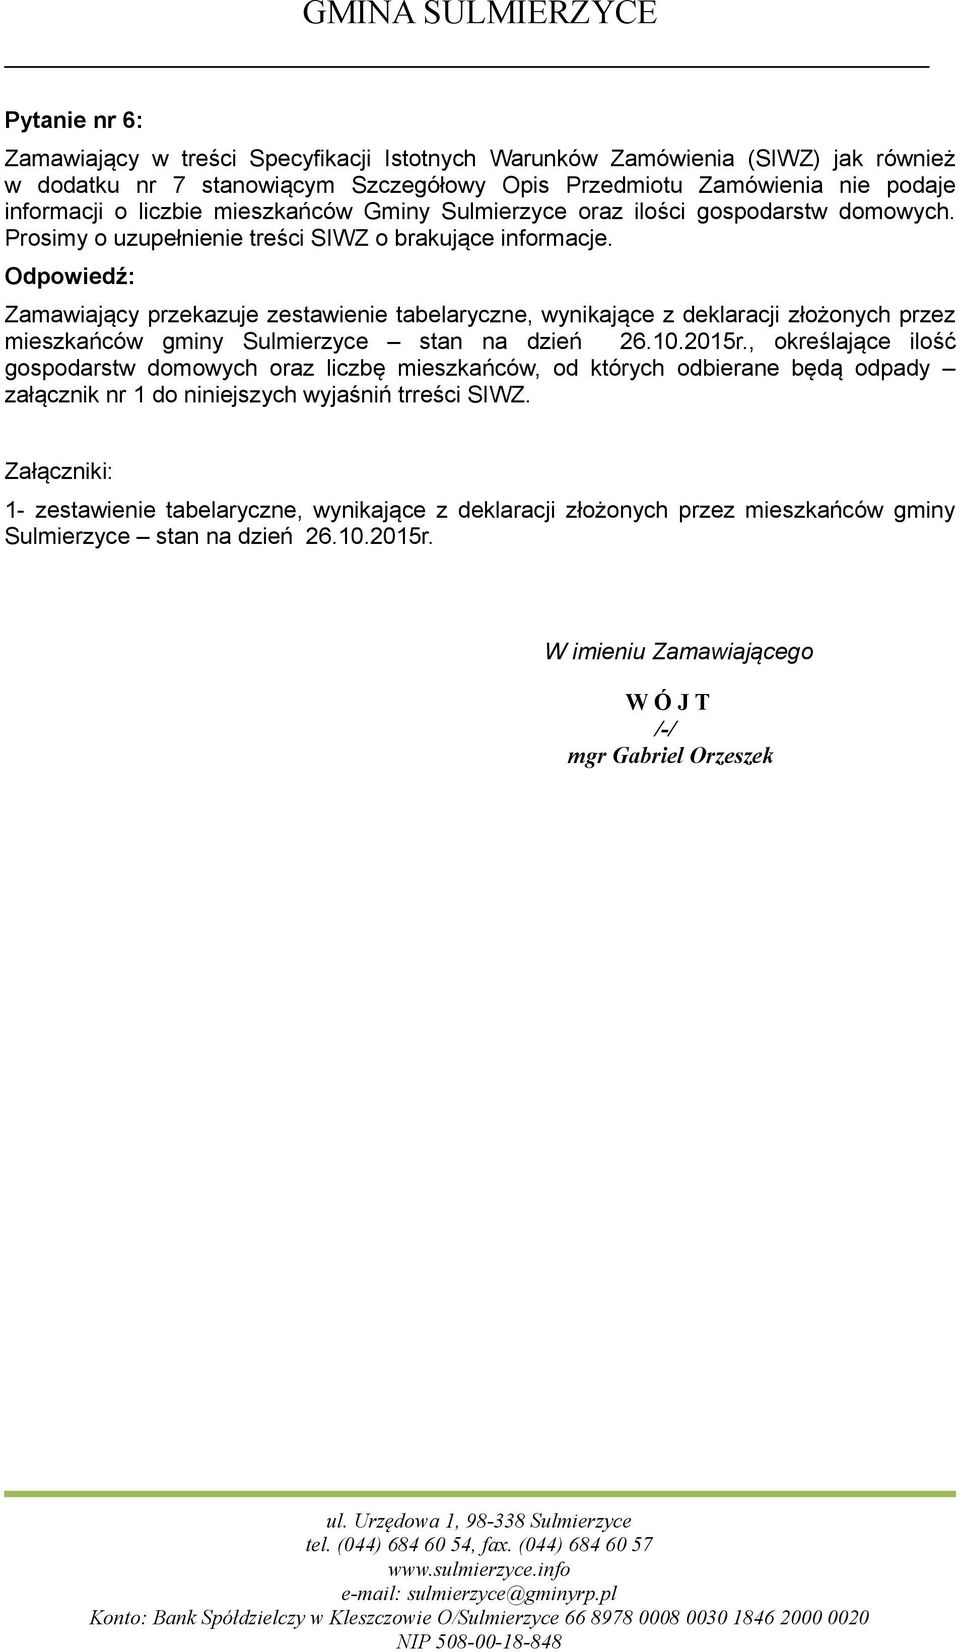 Zamawiający przekazuje zestawienie tabelaryczne, wynikające z deklaracji złożonych przez mieszkańców gminy Sulmierzyce stan na dzień 26.10.2015r.